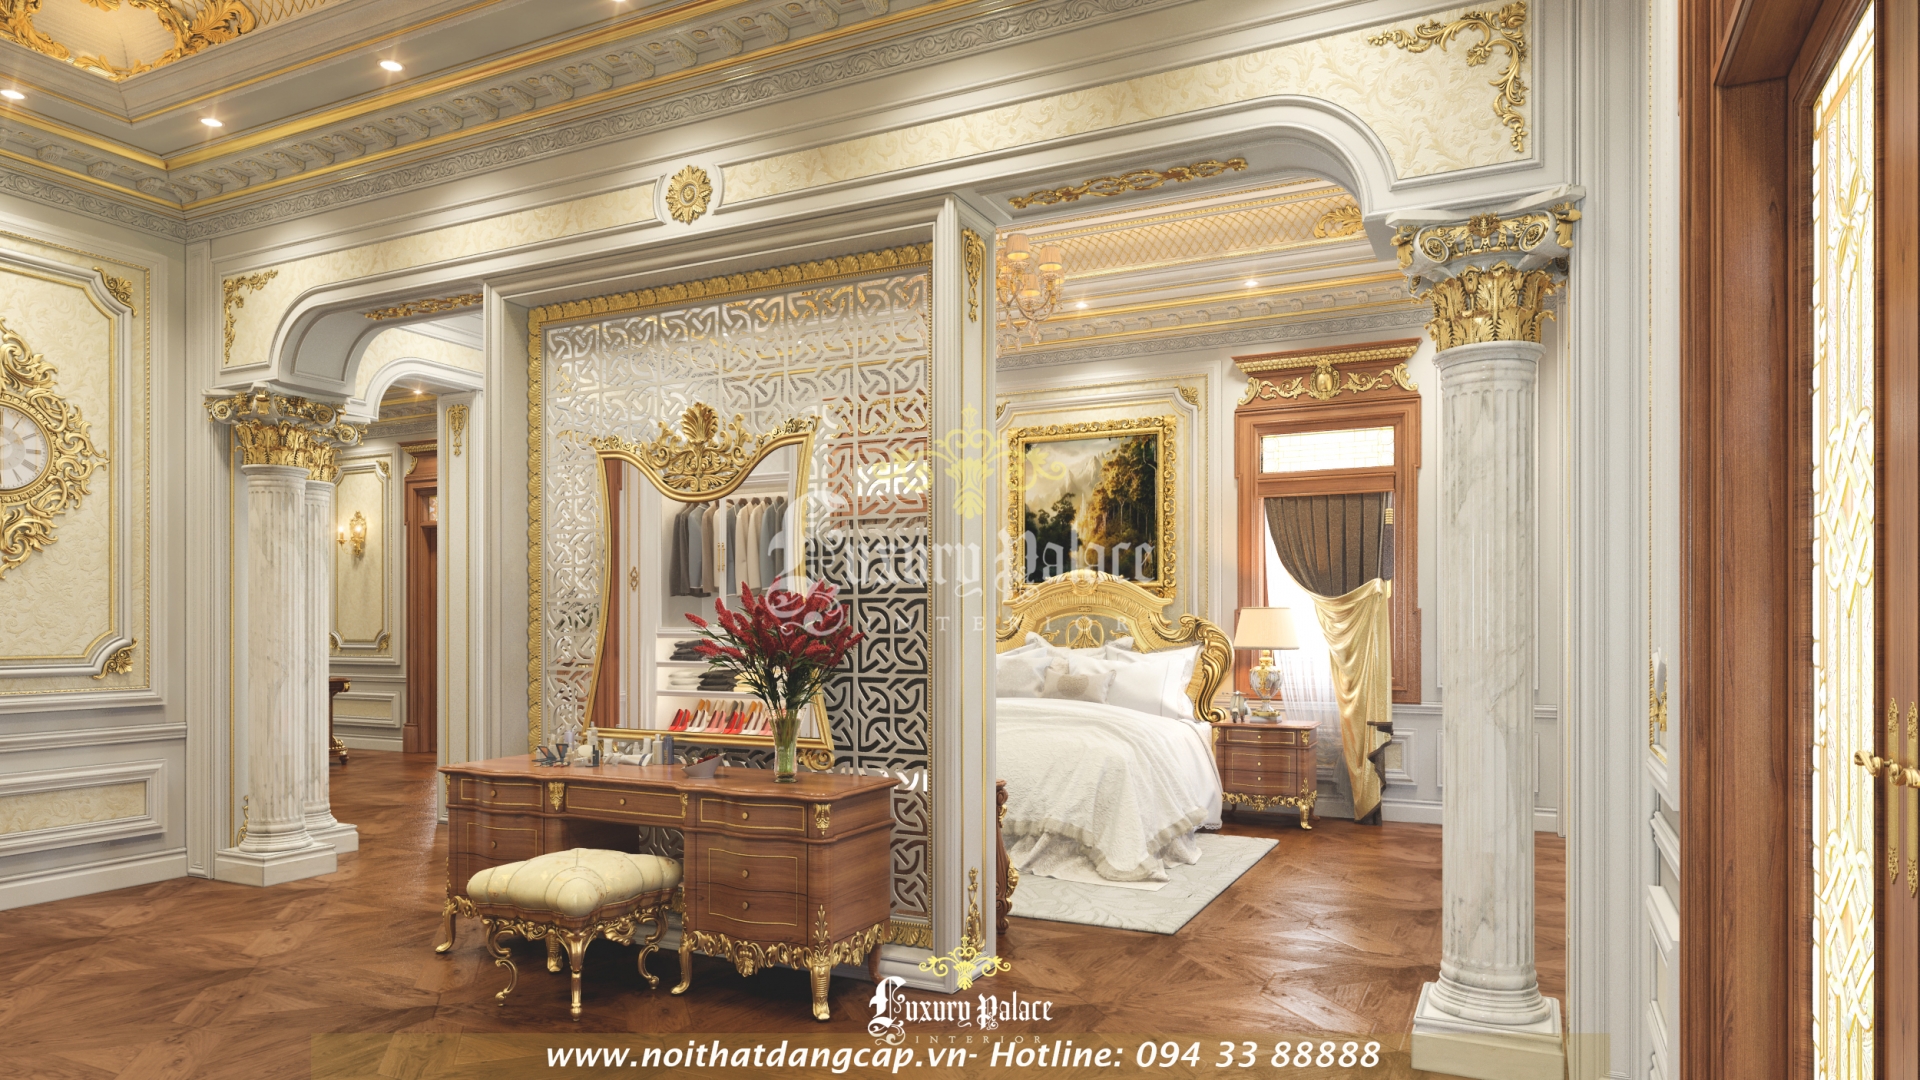 Nội thất phòng ngủ cổ điển biệt thự châu Âu cổ điển 